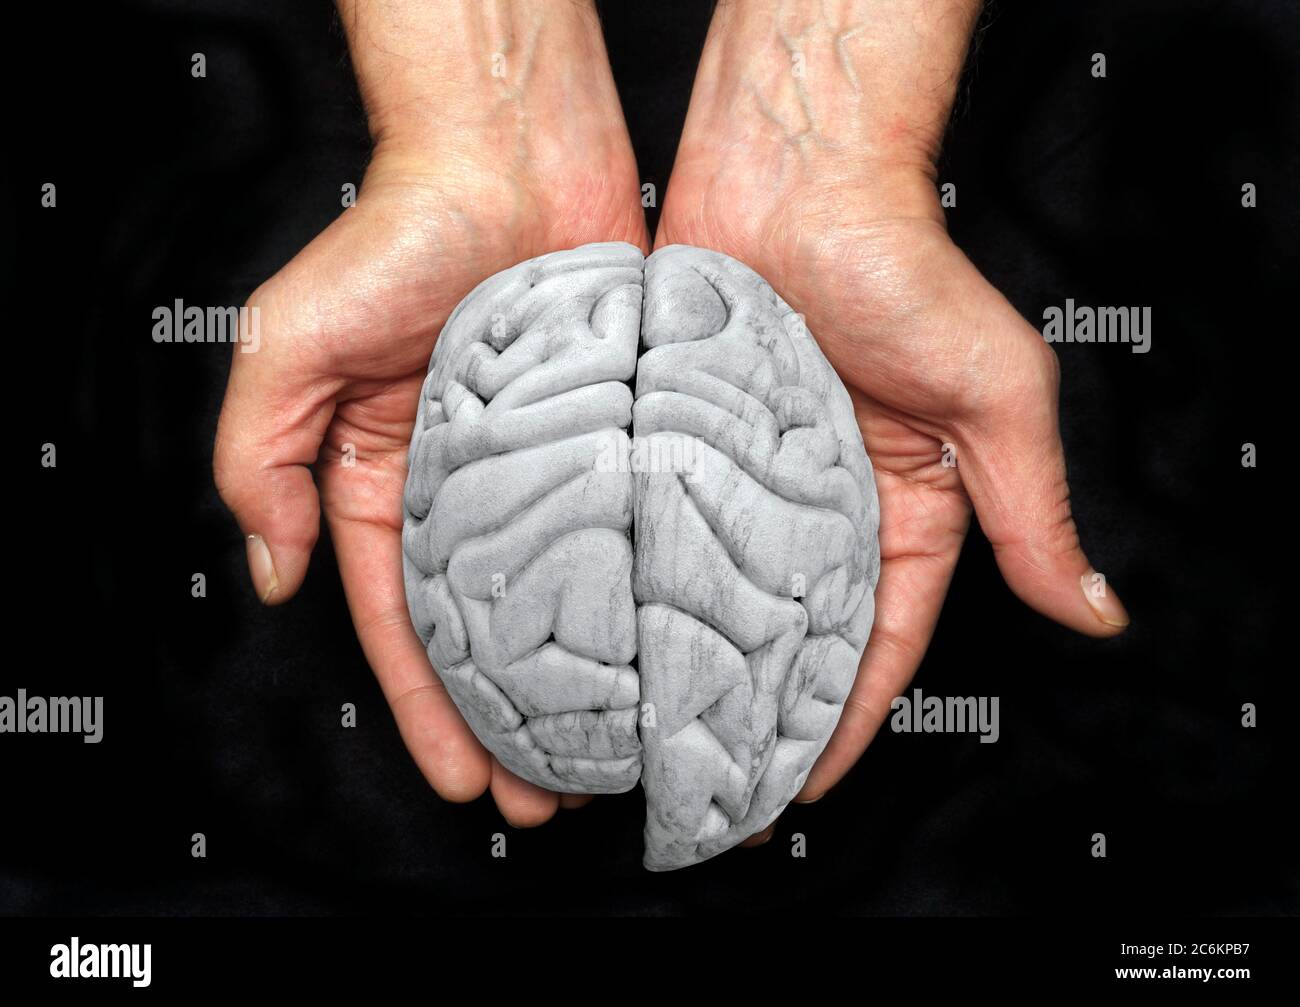 Hemisferio cerebral izquierdo ampliado, imagen conceptual. Esto podría representar la hemimegalencefalia (HME), una rara condición neurológica en la que un lado del cerebro es anormalmente más grande que el otro. También podría representar el uso de un lado del cerebro más que el. Foto de stock